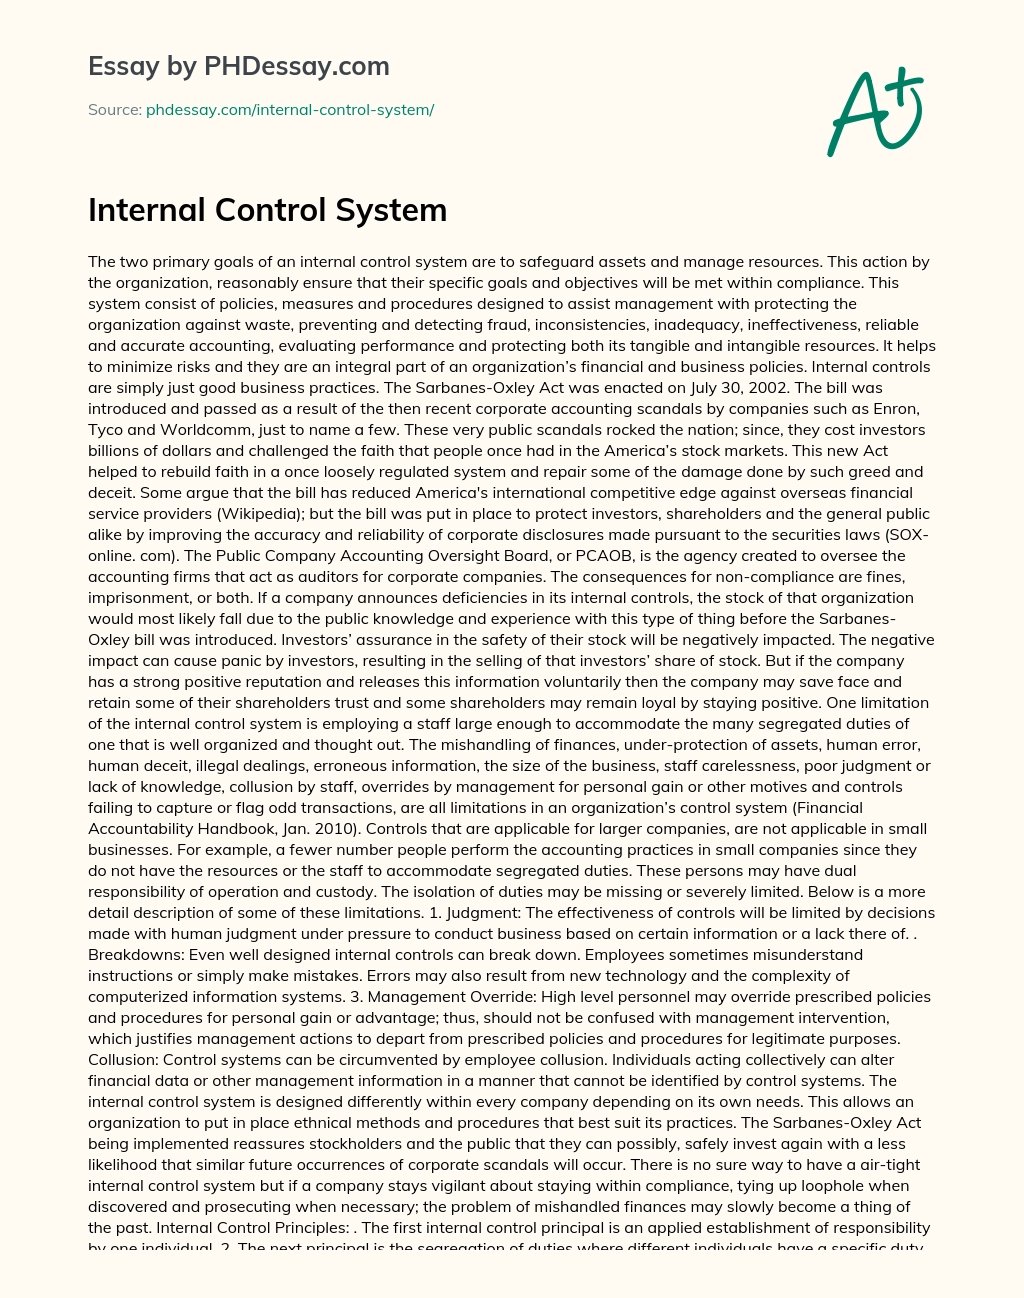 Internal Control System essay